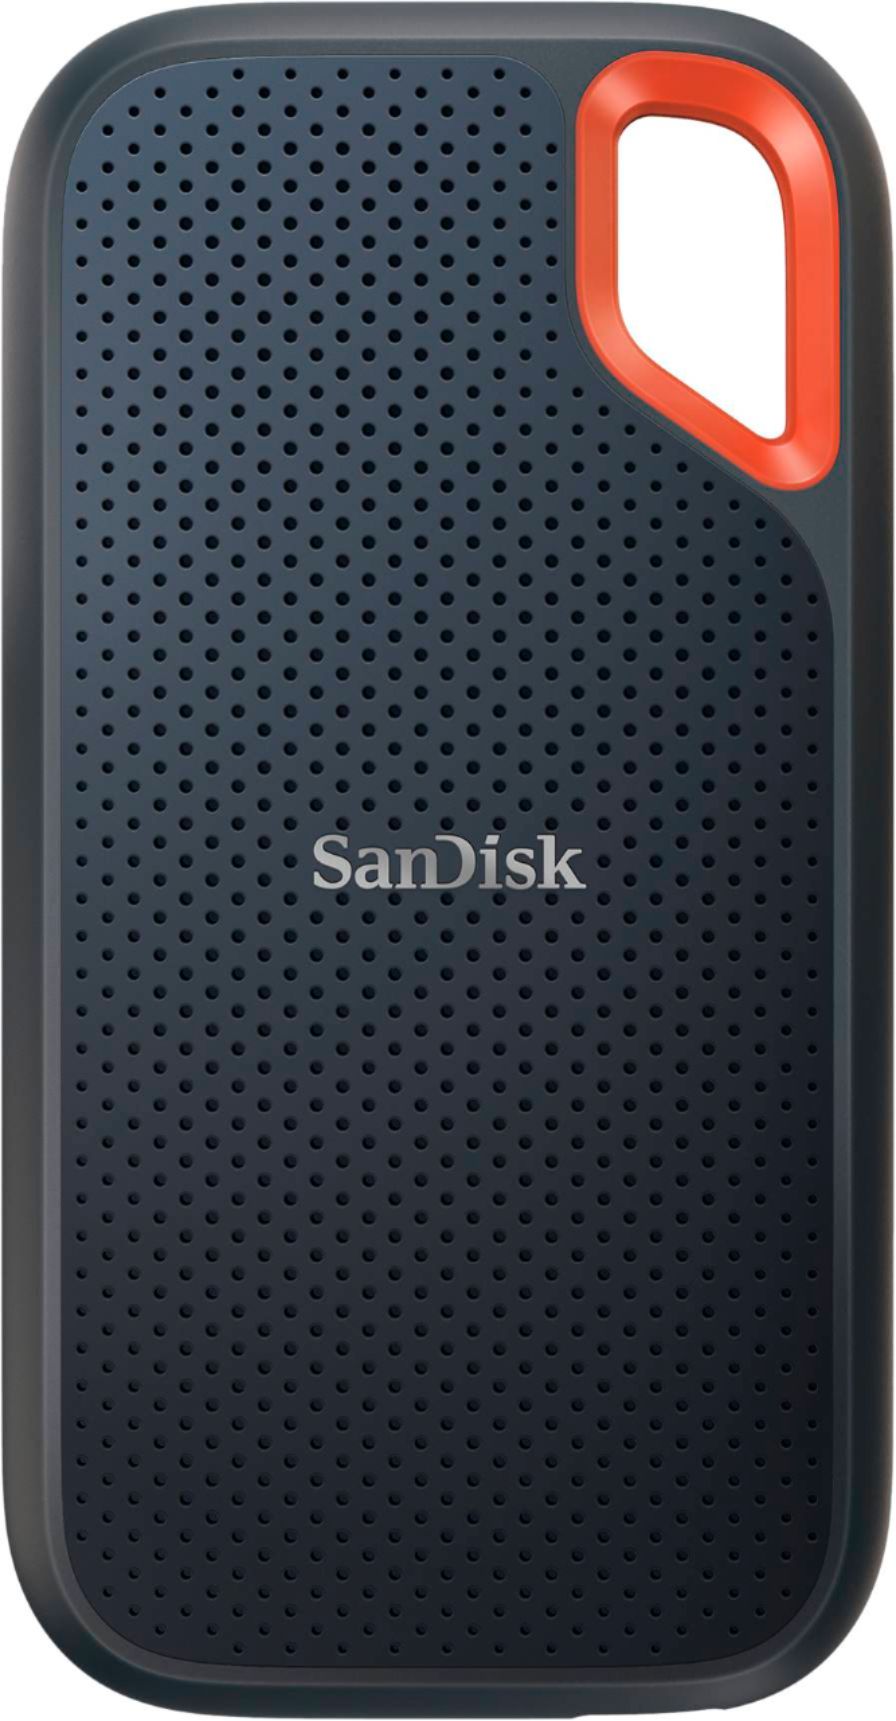 SanDisk Extreme Portable 2TB External USB-C NVMe SSD Black  SDSSDE61-2T00-G25 Best Buy